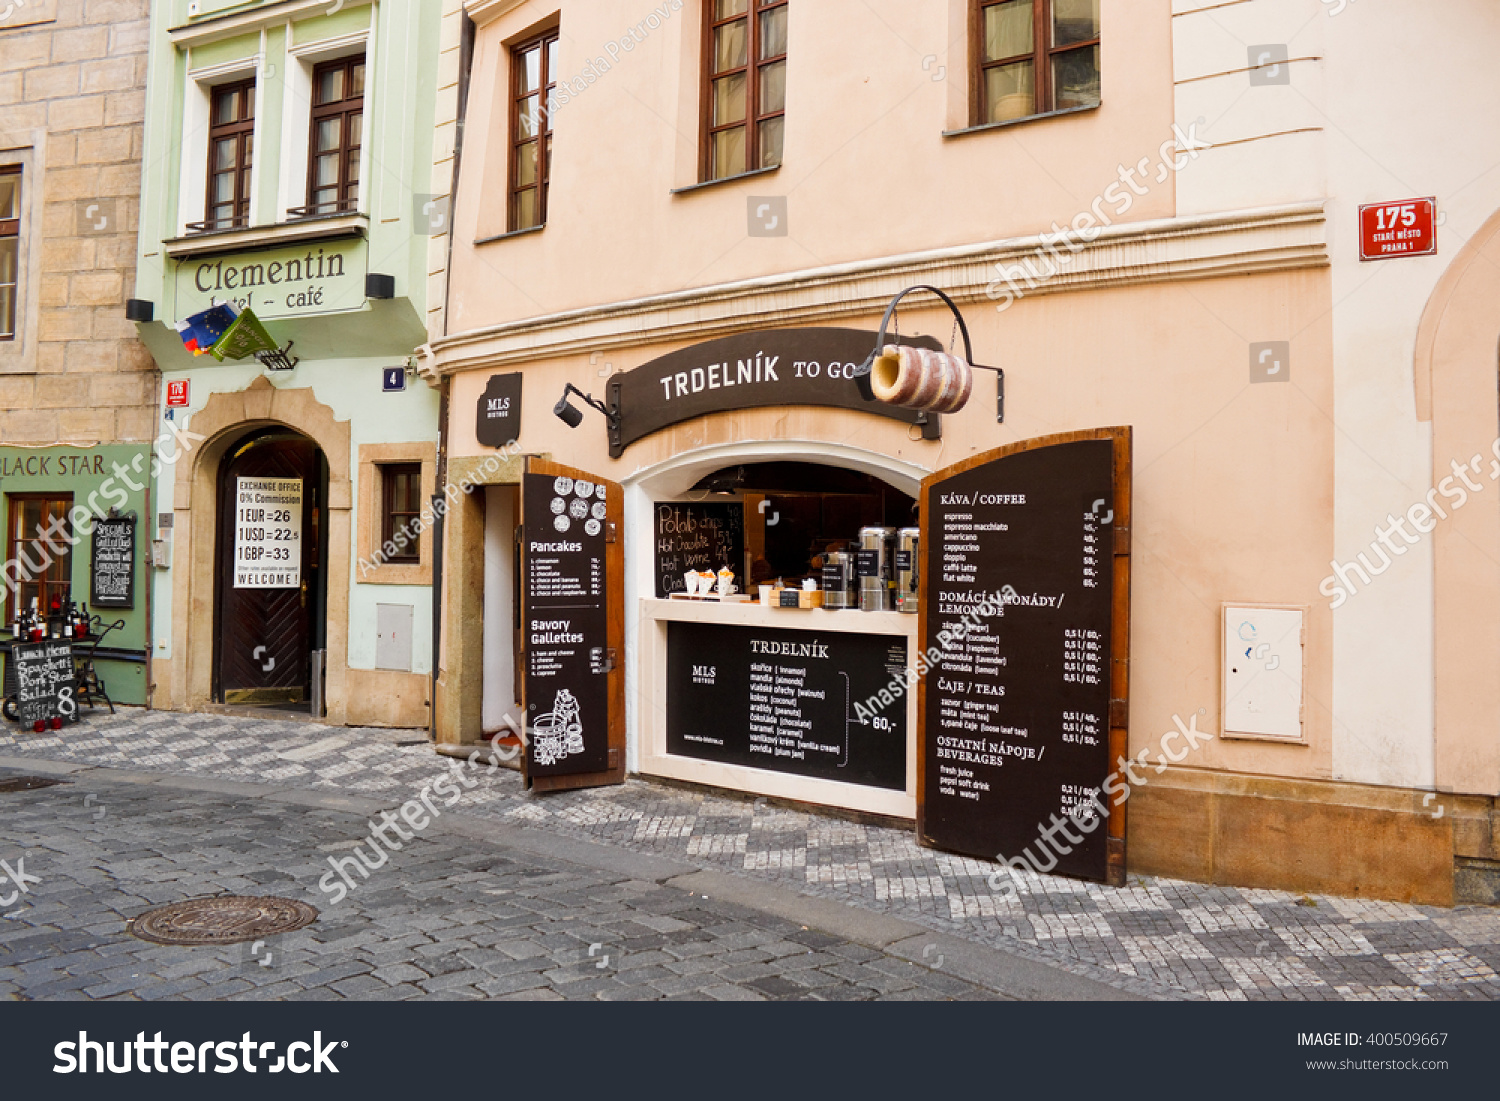 2016 czech street Czech Republic